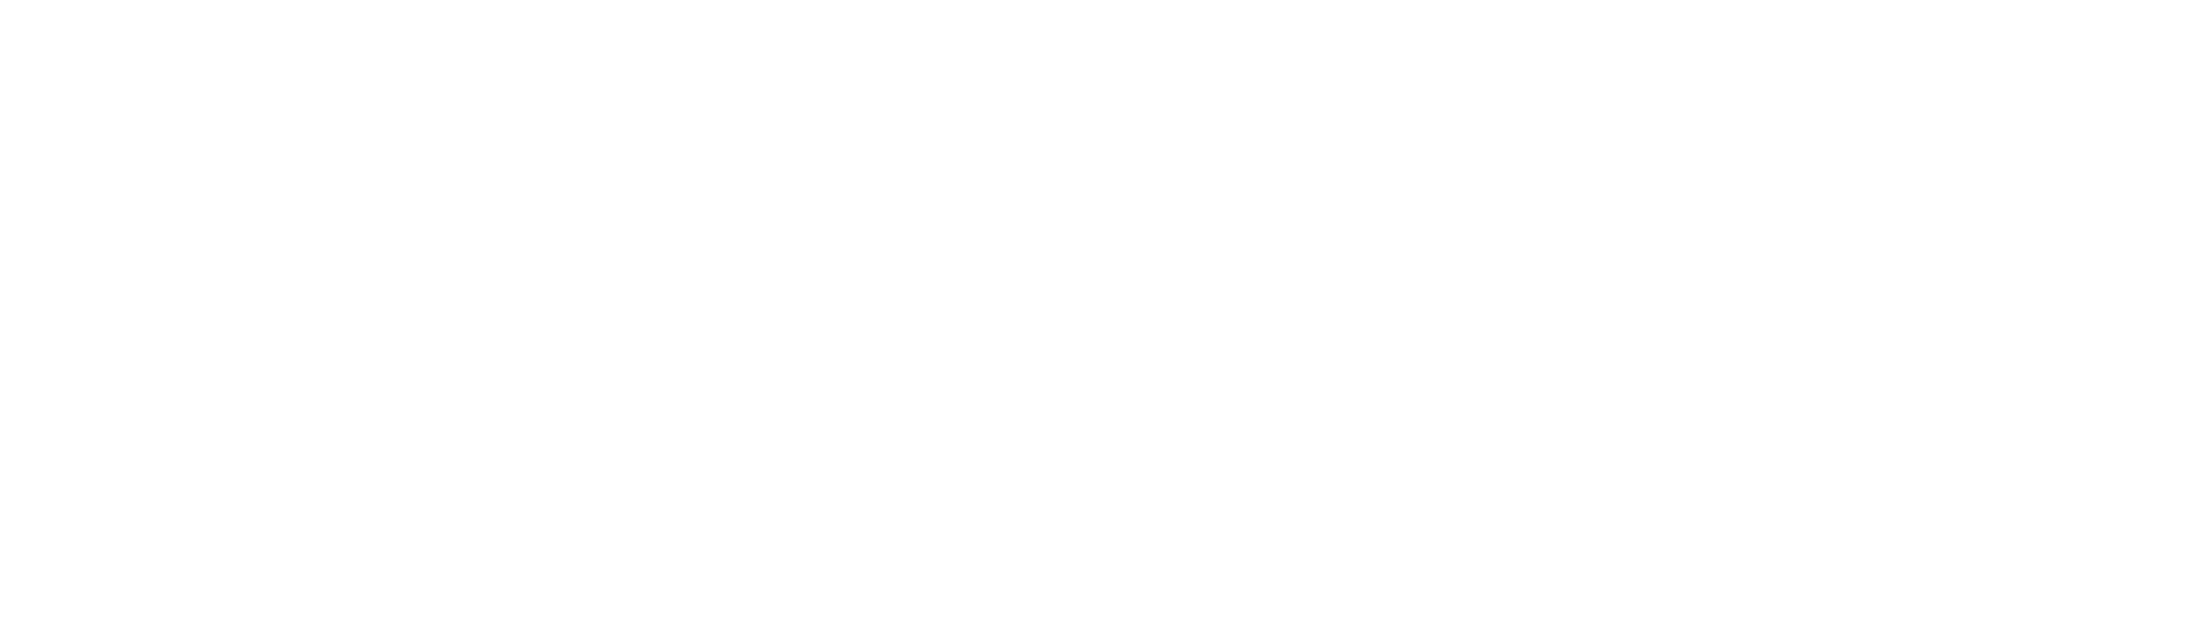 Fudgelearn logo